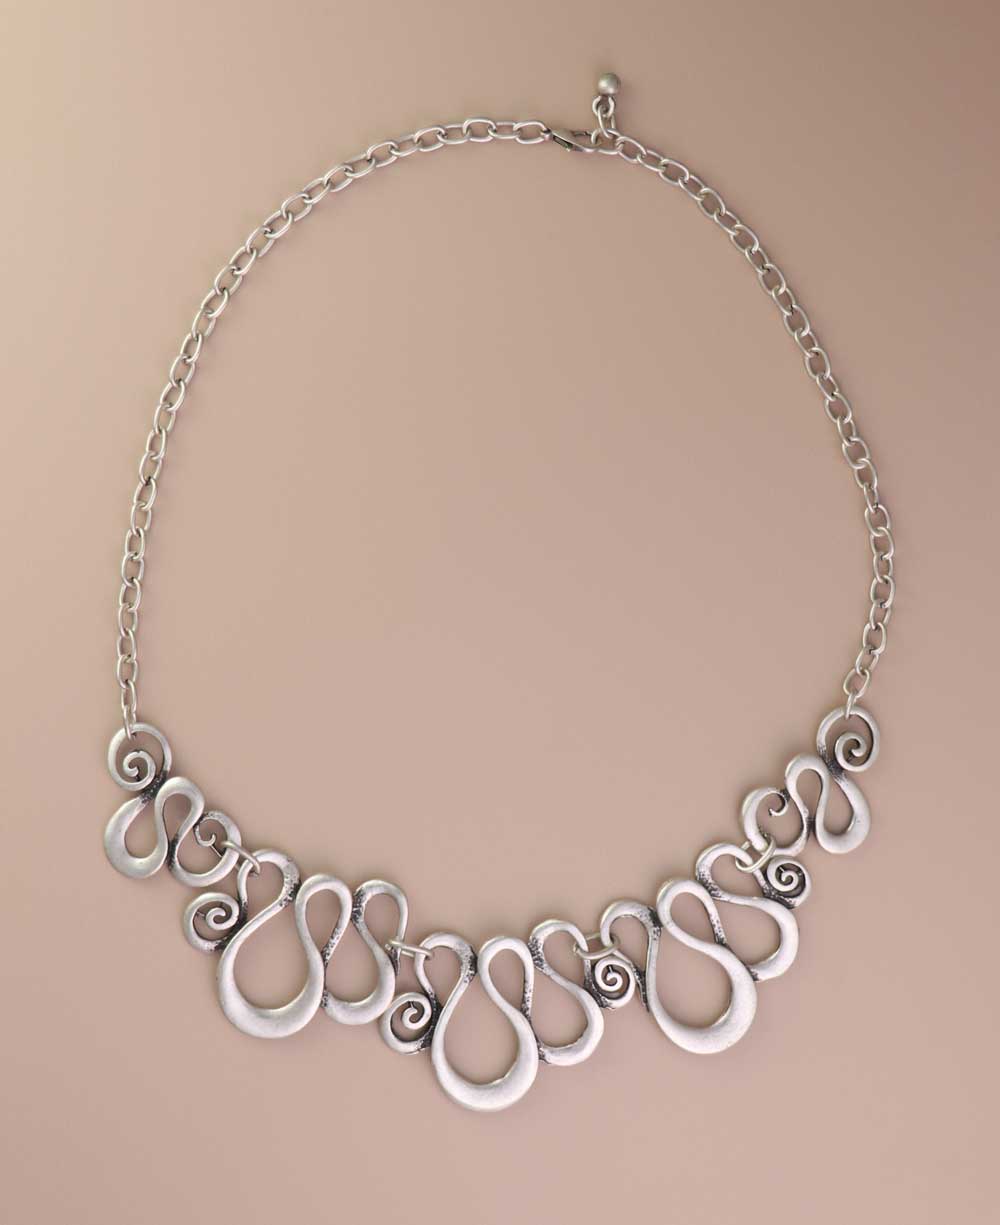 Organic fluid design necklace